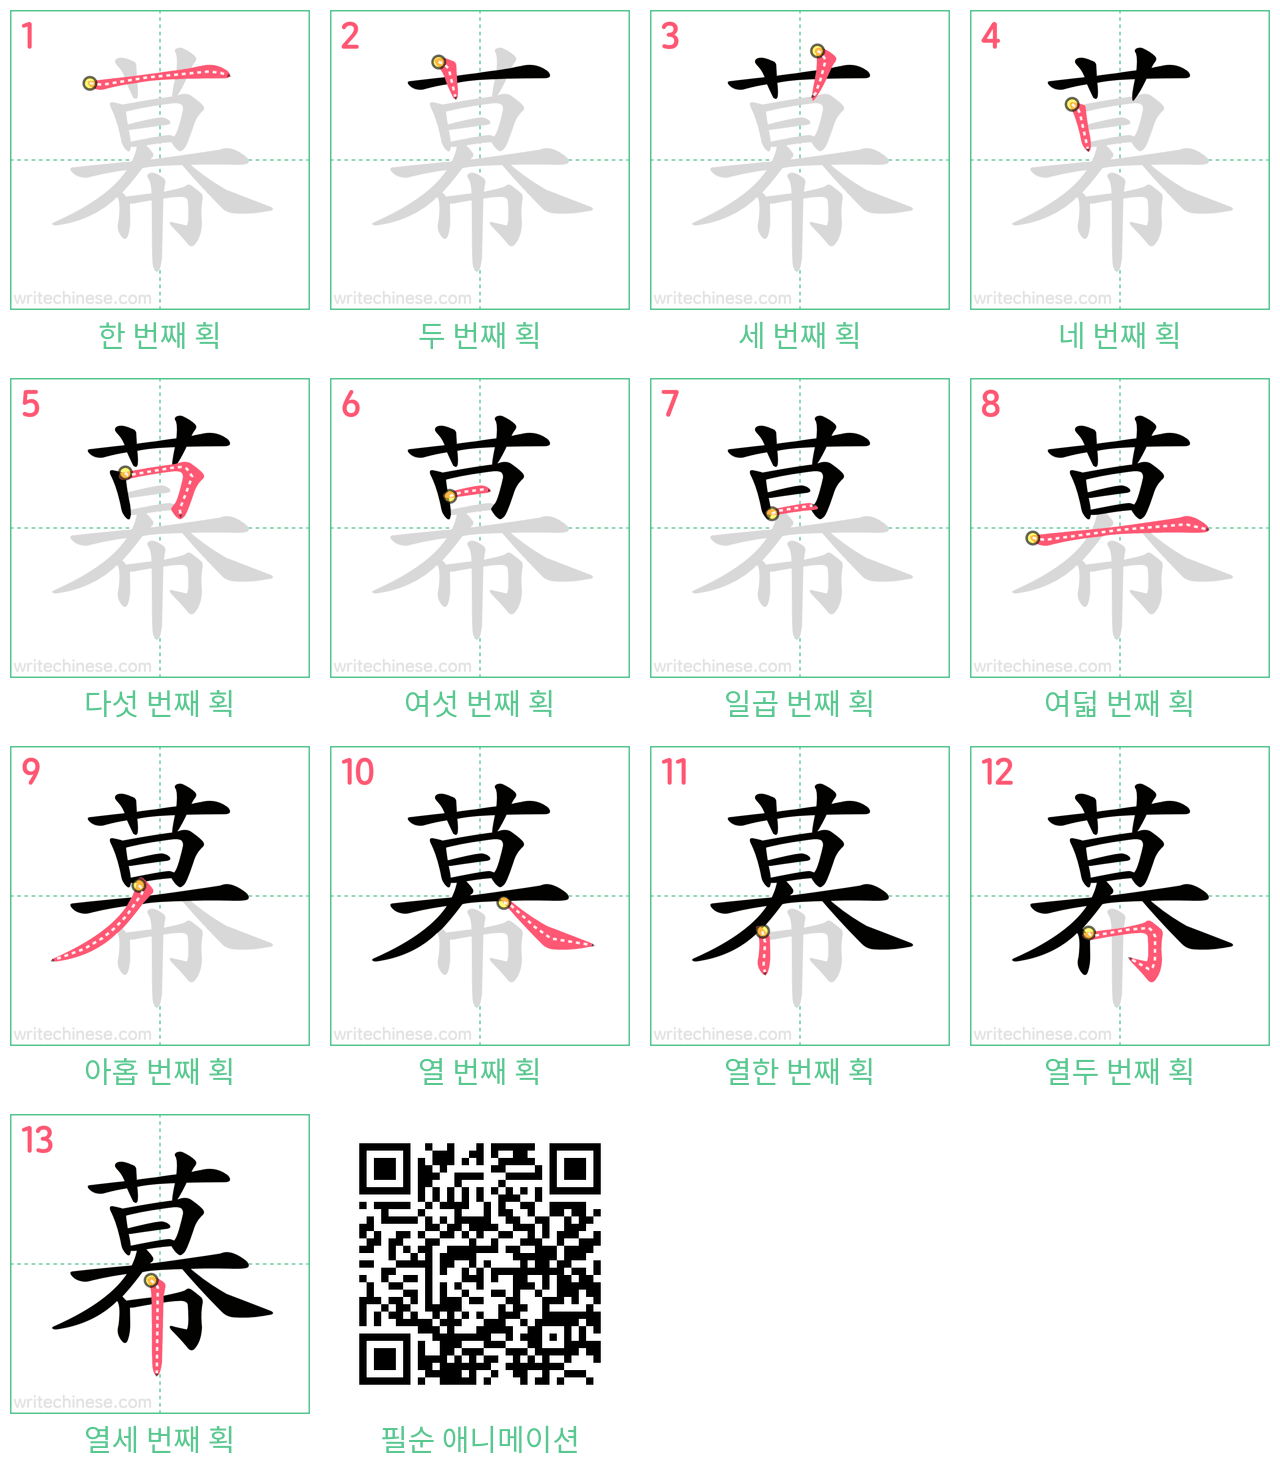 幕 step-by-step stroke order diagrams